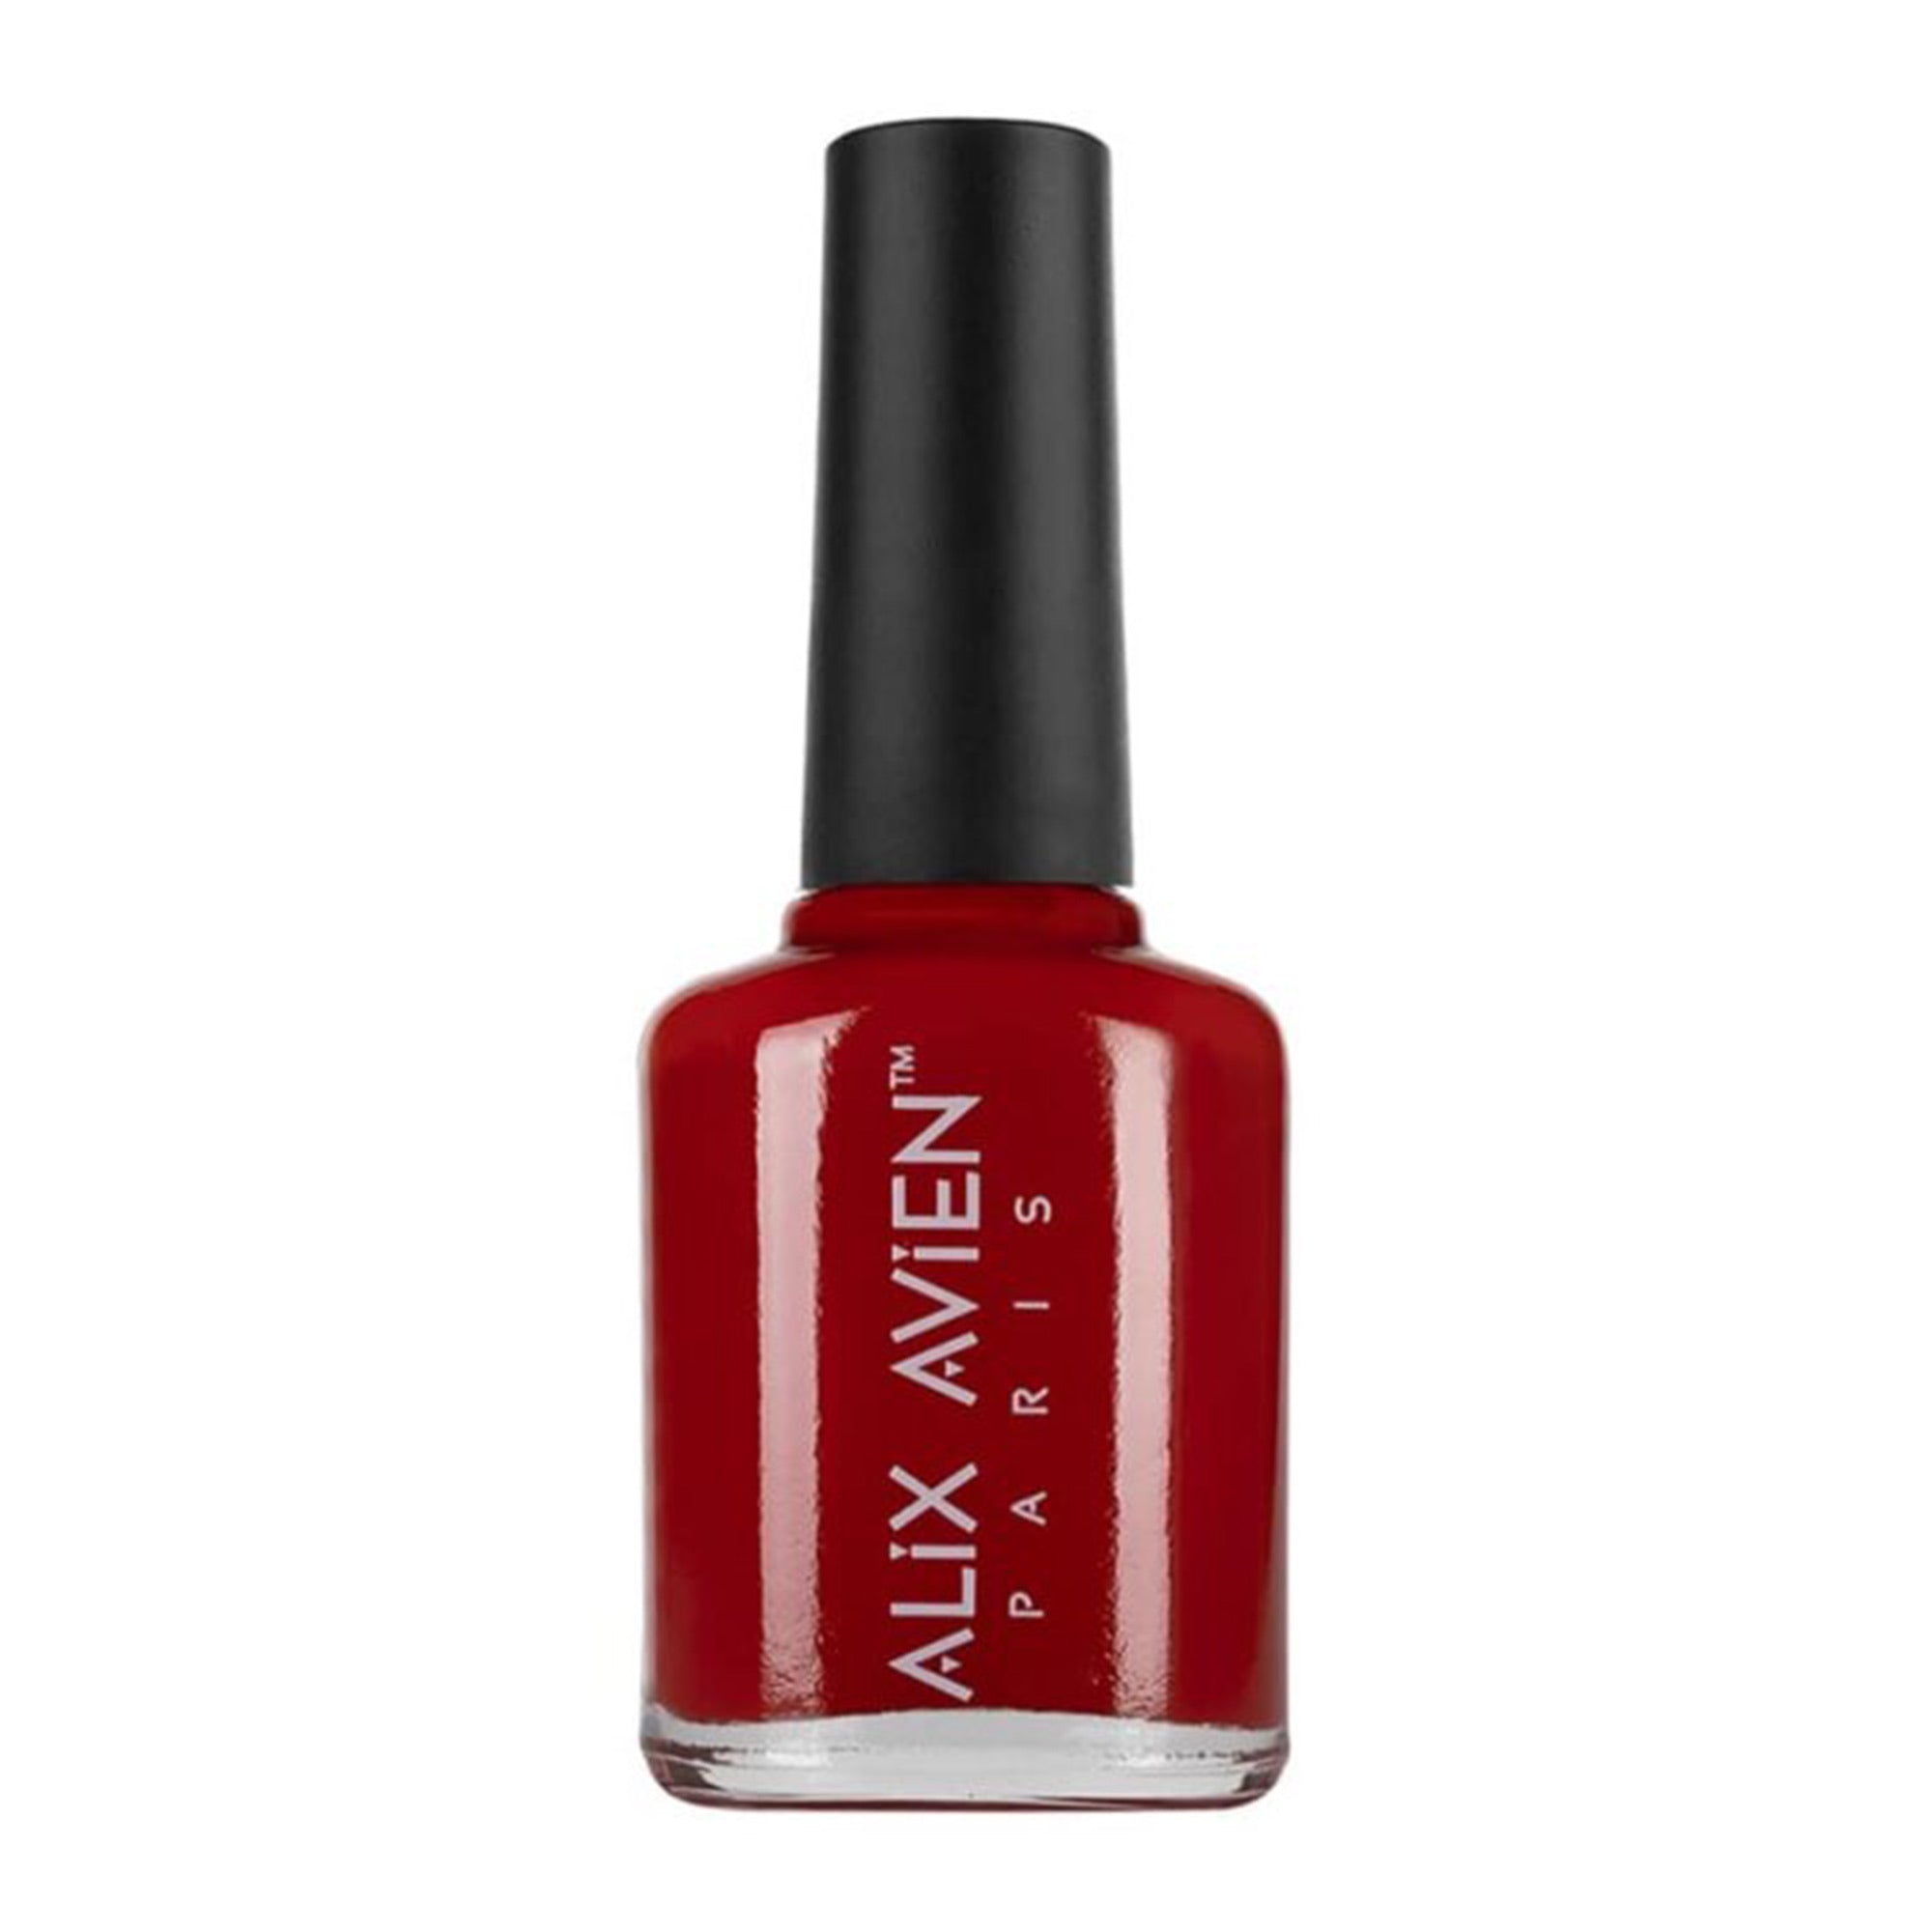 Alix Avien - Nail Polish No.56 (Deep Red)